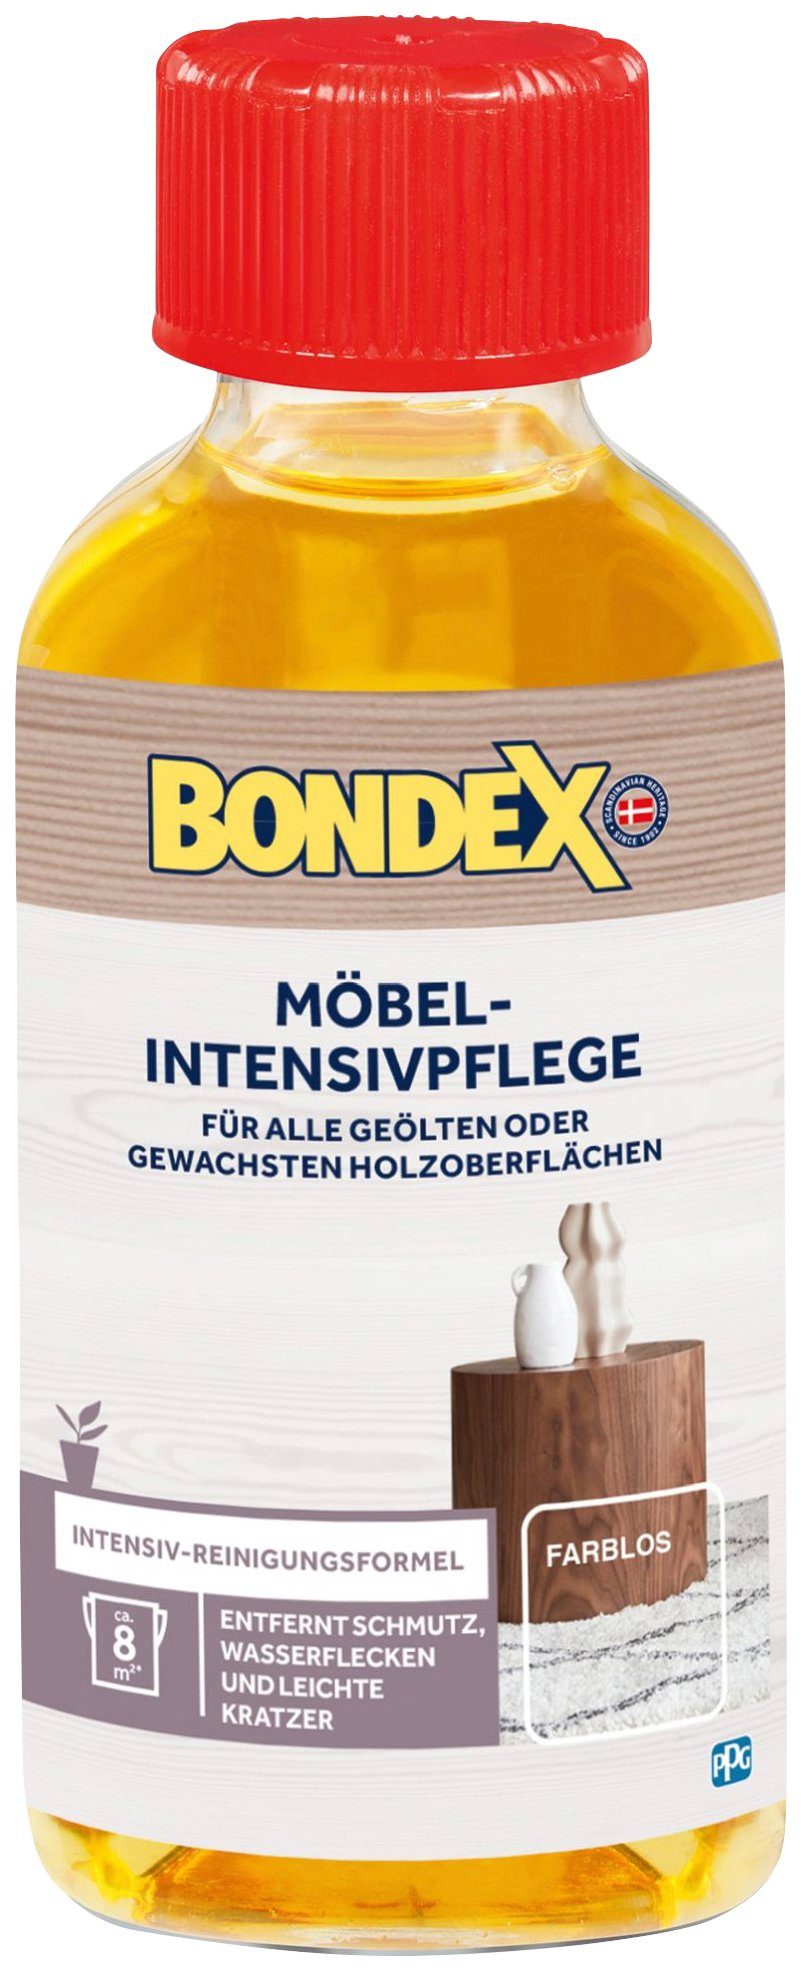 Bondex MÖBEL-INTENSIVPFLEGE Farblos 0,15 l Holzpflegeöl